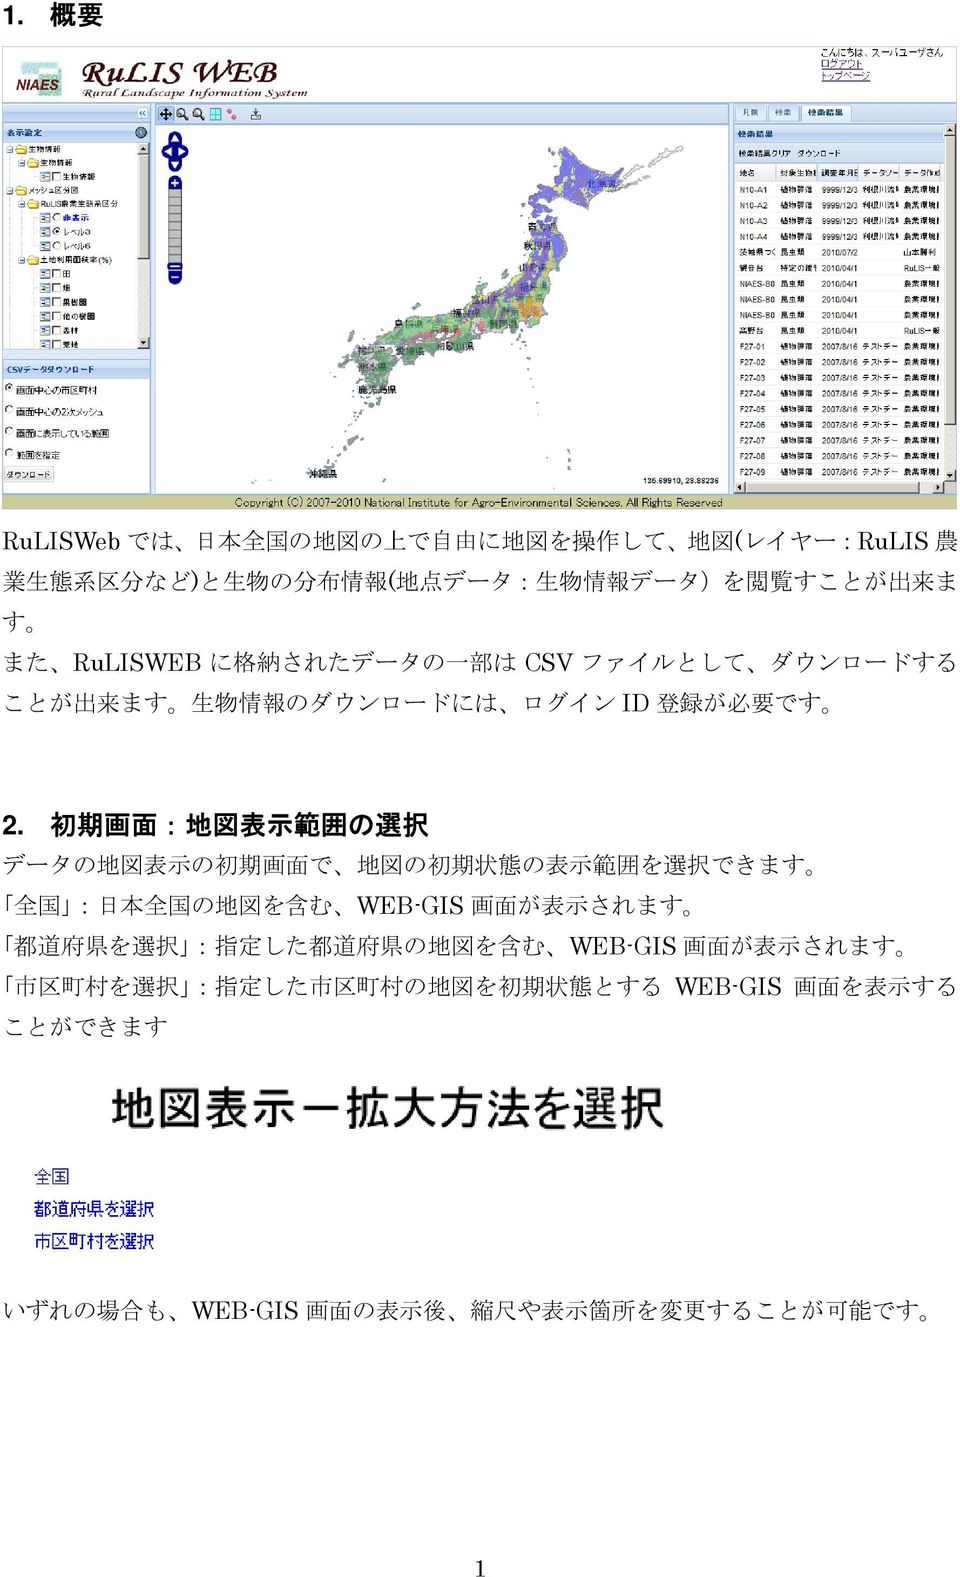 初 期 画 面 : 地 図 表 示 範 囲 の 選 択 データの 地 図 表 示 の 初 期 画 面 で 地 図 の 初 期 状 態 の 表 示 範 囲 を 選 択 できます 全 国 : 日 本 全 国 の 地 図 を 含 む WEB-GIS 画 面 が 表 示 されます 都 道 府 県 を 選 択